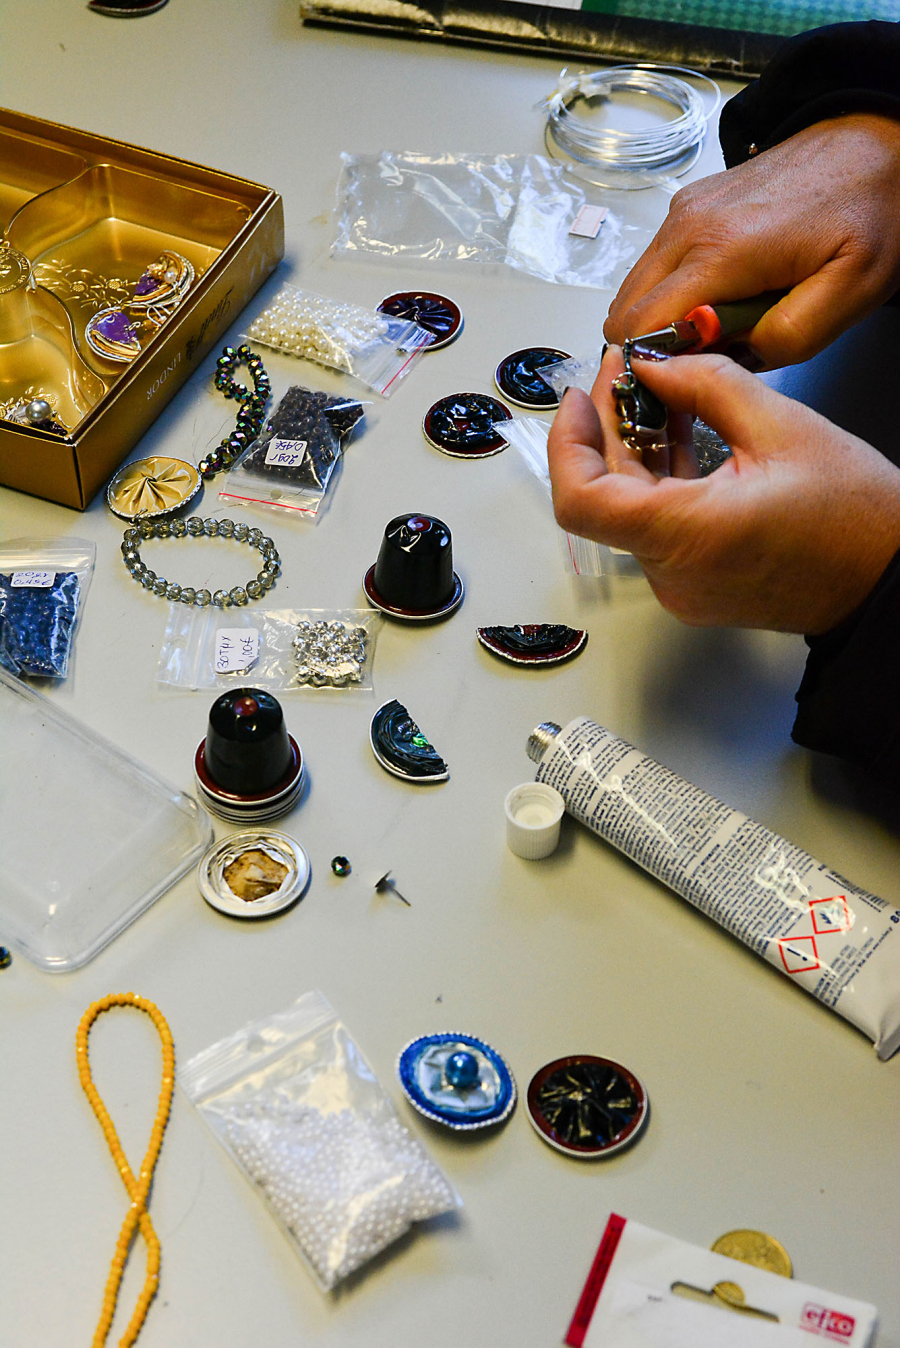 Preparing jewellery from espresso capsules